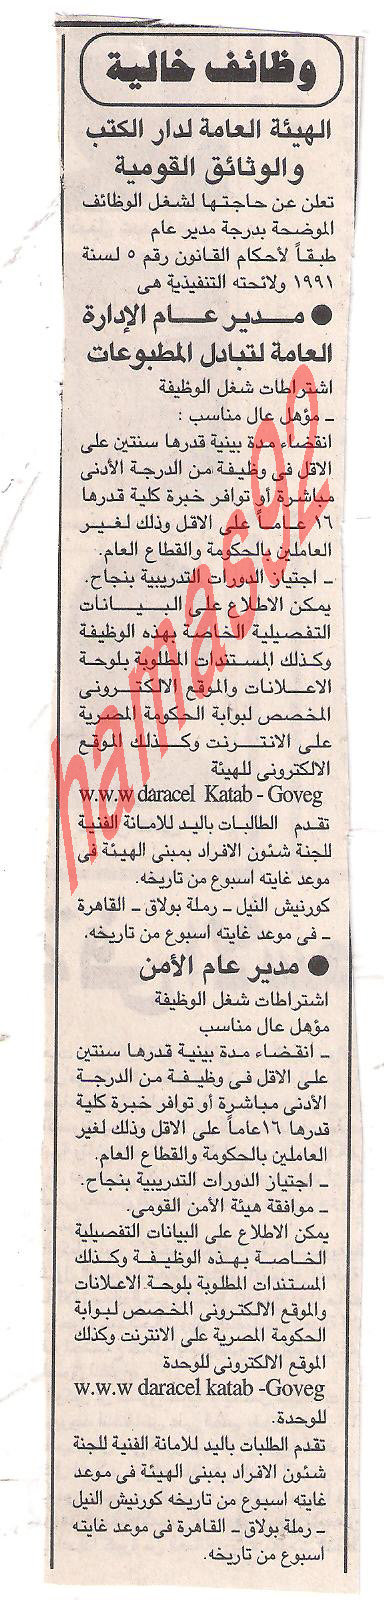 وظائف خالية من جريدة الجمهورية الاثنين 14/11/2011 Picture+003